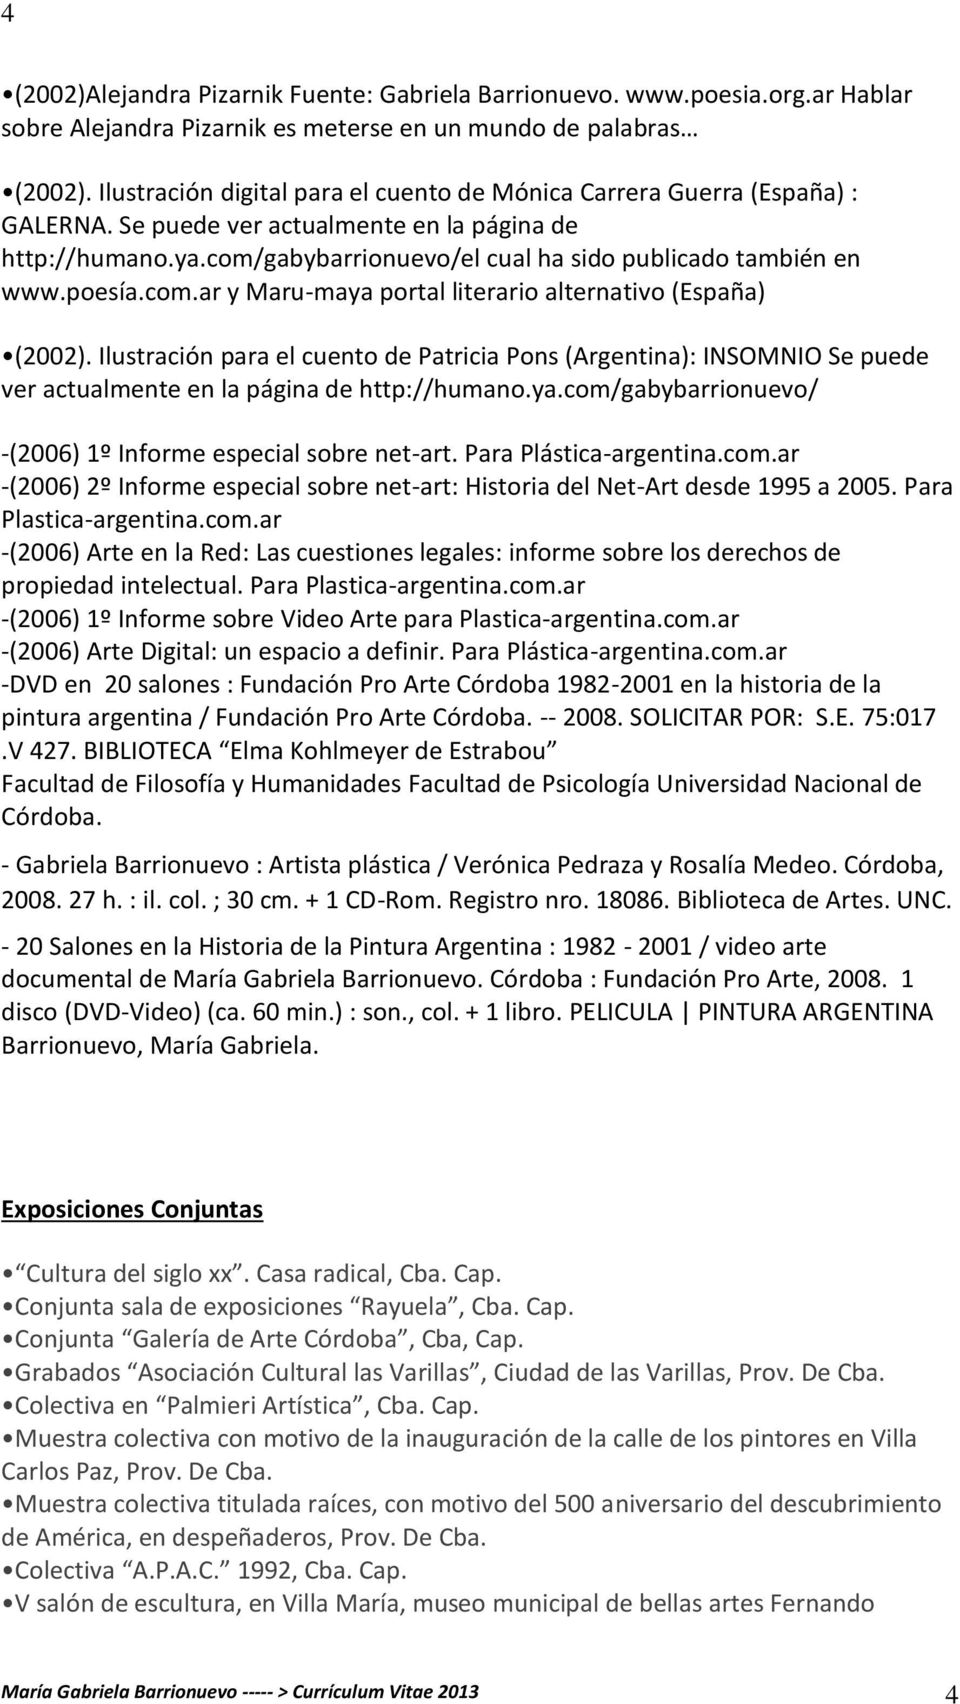 poesía.com.ar y Maru-maya portal literario alternativo (España) (2002). Ilustración para el cuento de Patricia Pons (Argentina): INSOMNIO Se puede ver actualmente en la página de http://humano.ya.com/gabybarrionuevo/ -(2006) 1º Informe especial sobre net-art.